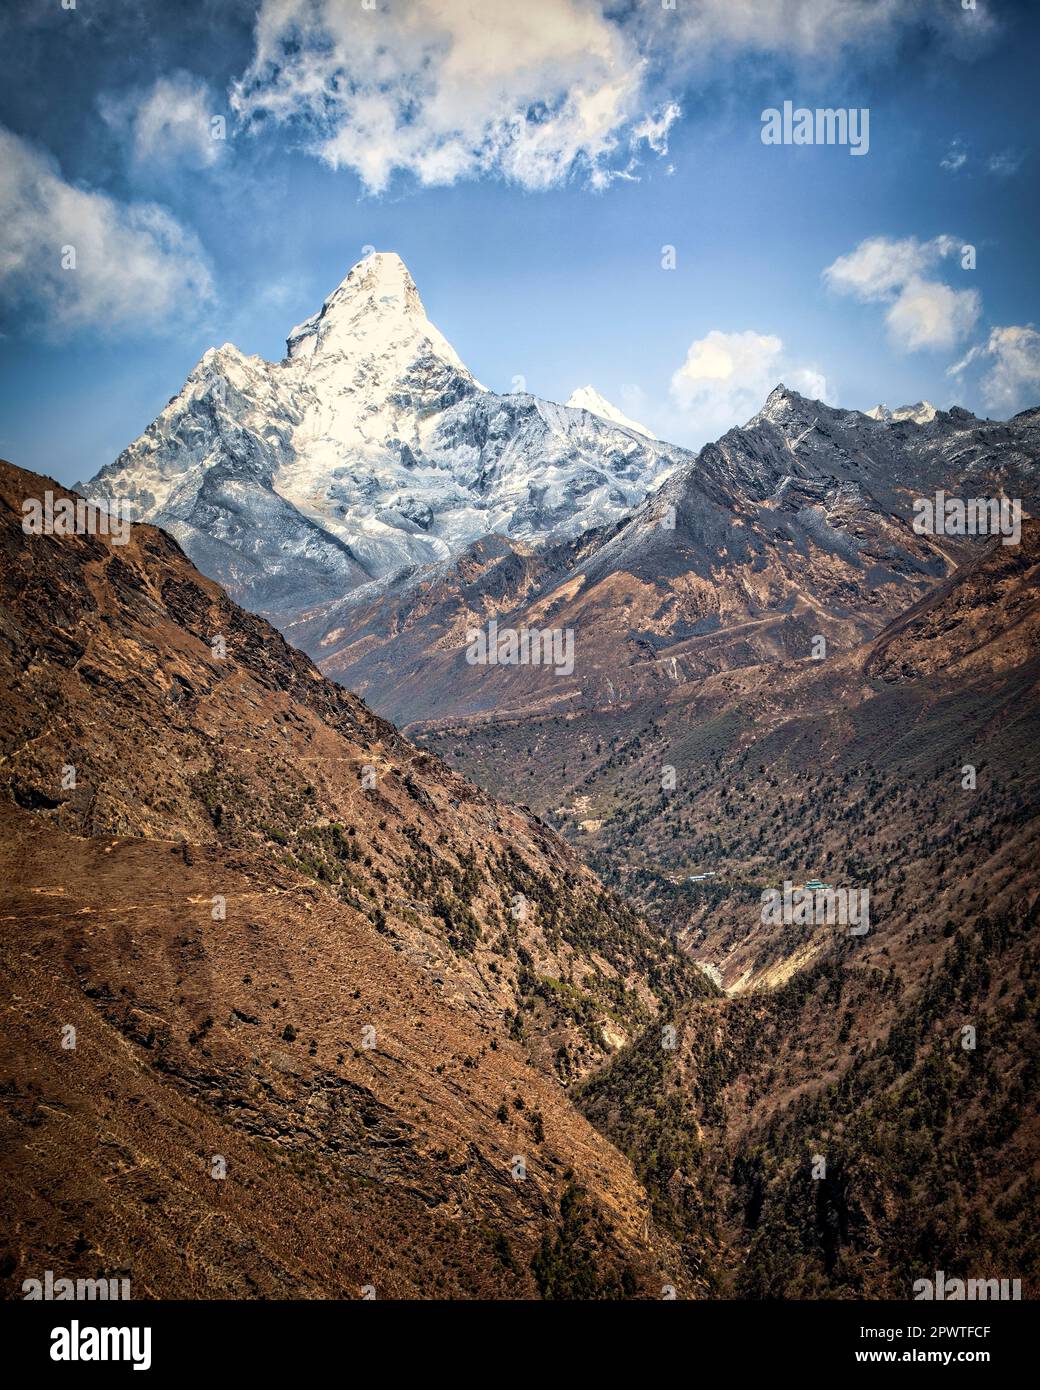 AMA Dablam arrive en vue sur le sentier de Mt. Camp Everest bas dans l'Himalaya du Népal. Banque D'Images